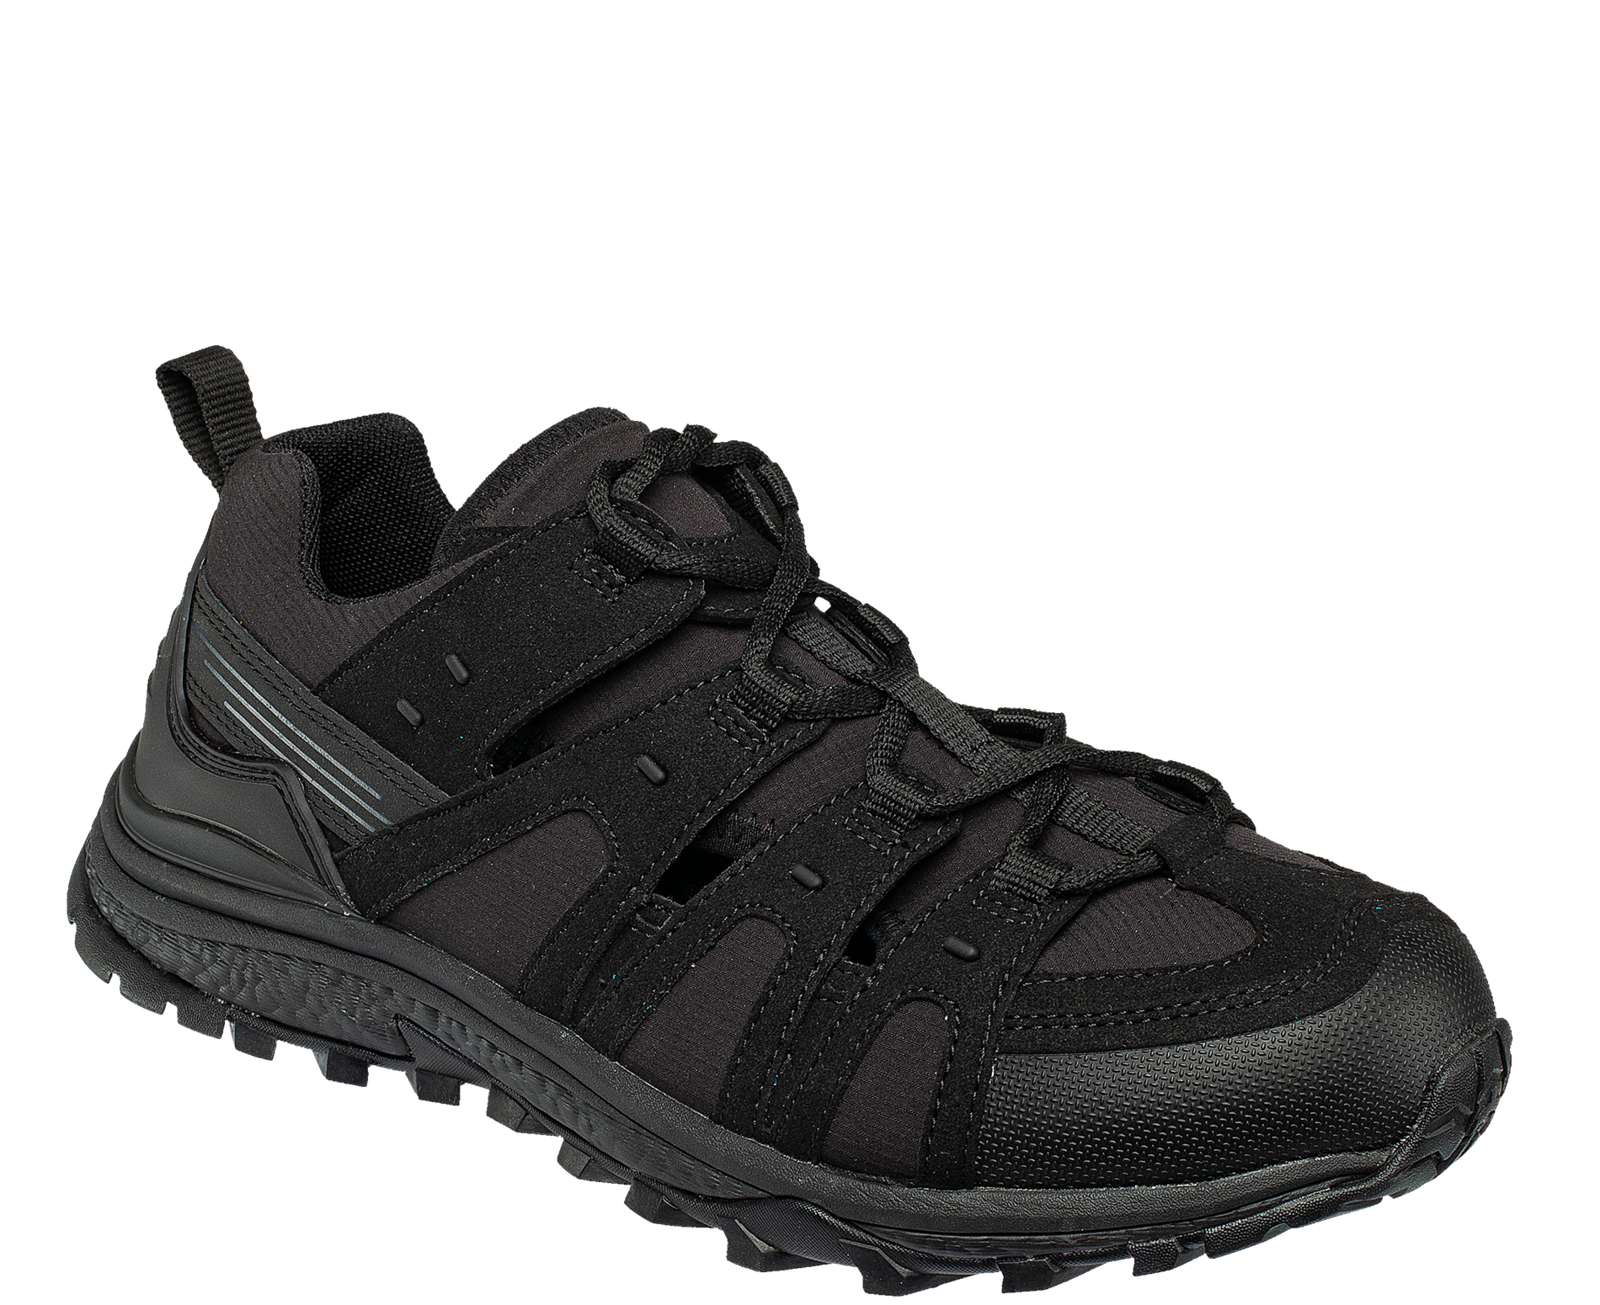 Pracovné sandále Bennon Amigo O1 čierne - veľkosť: 48, farba: čierna